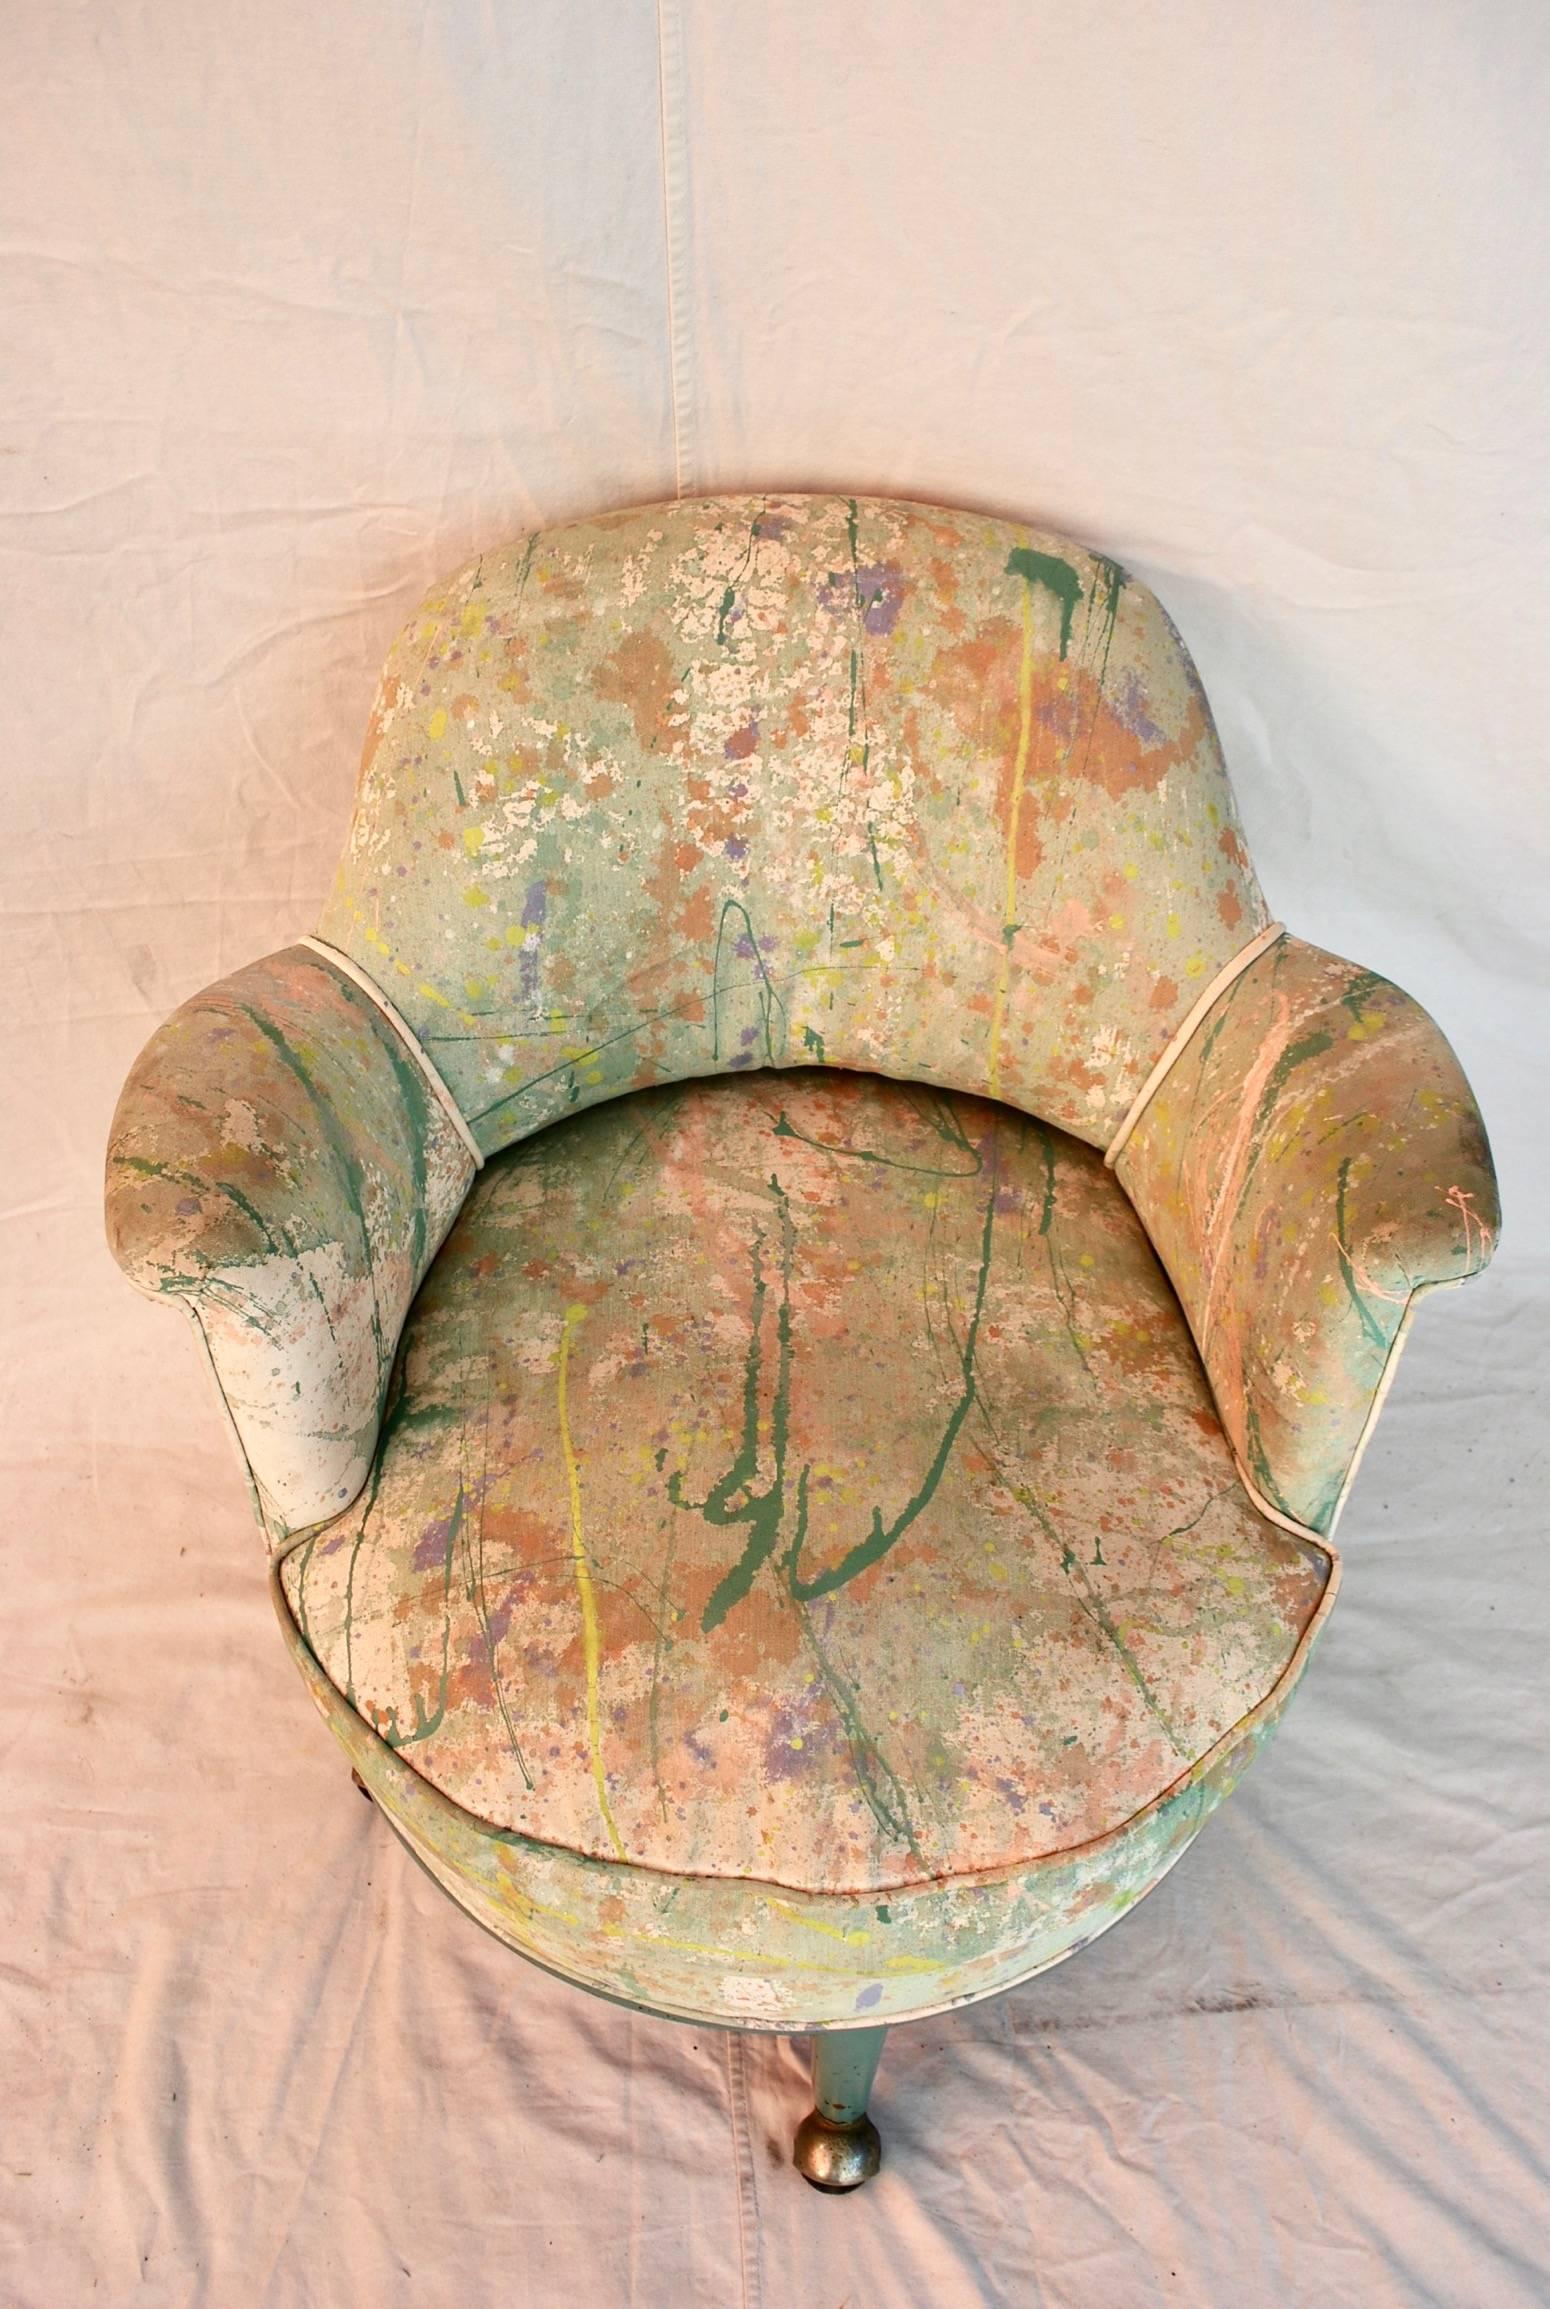 Un très rare fauteuil Monteverdi-Young avec tissu peint à la main par Jack Lennor Larsen, c'est très rare.
Entièrement d'origine, la patine est tellement plus belle en personne.